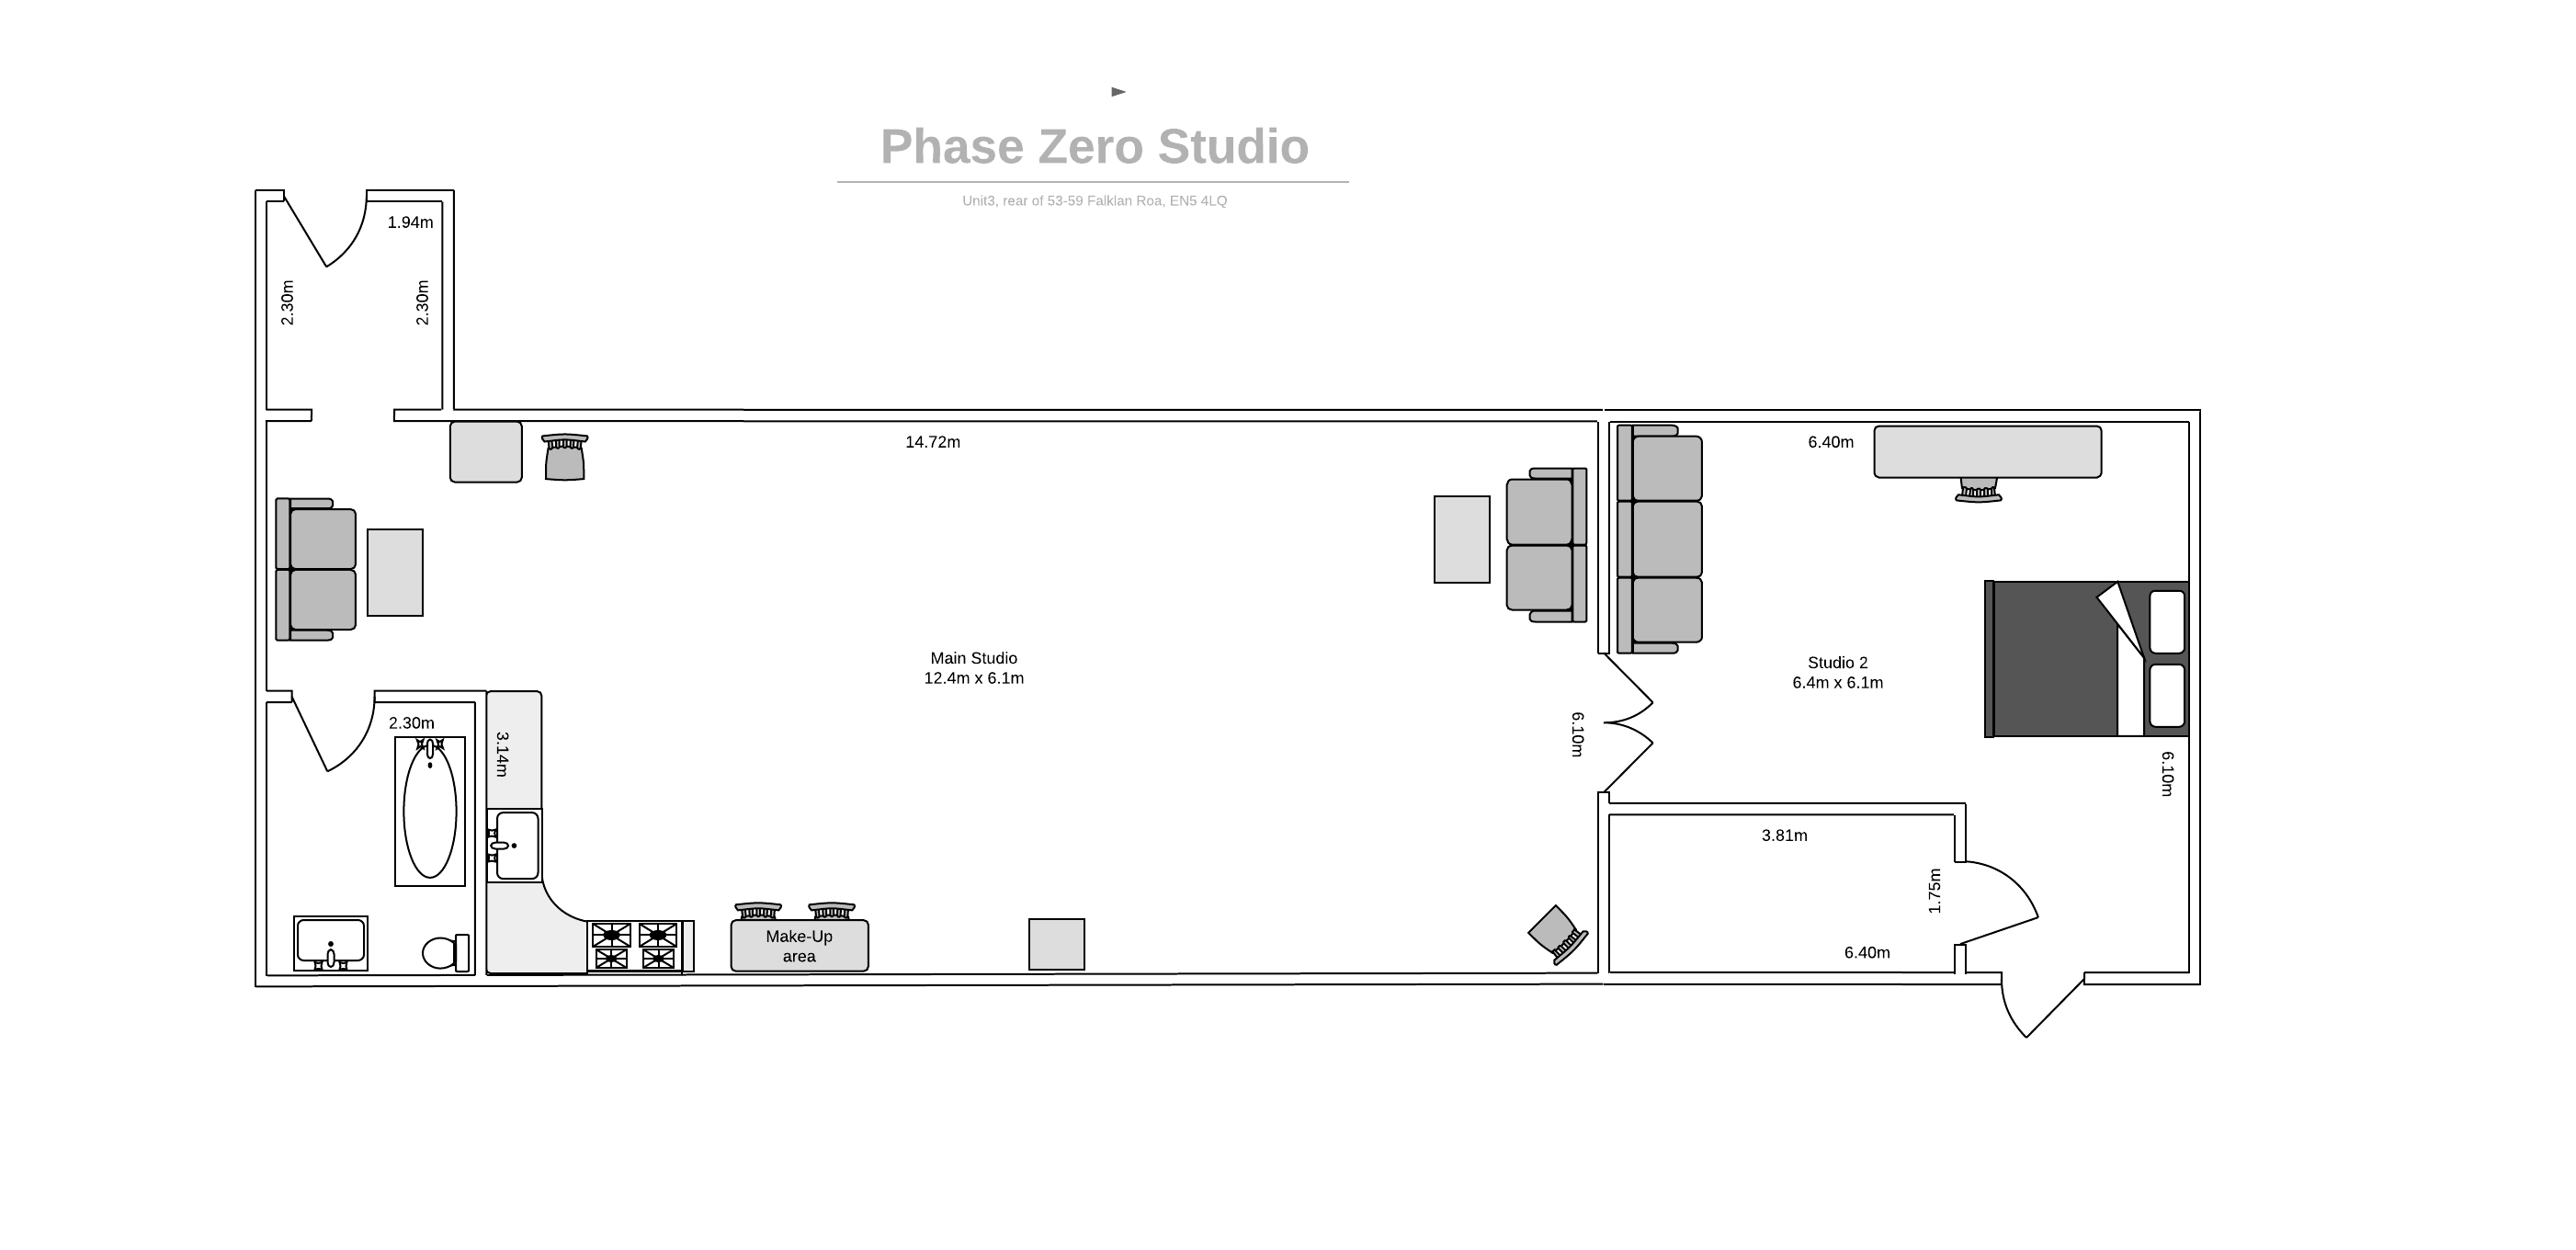 Phase Zero Studio